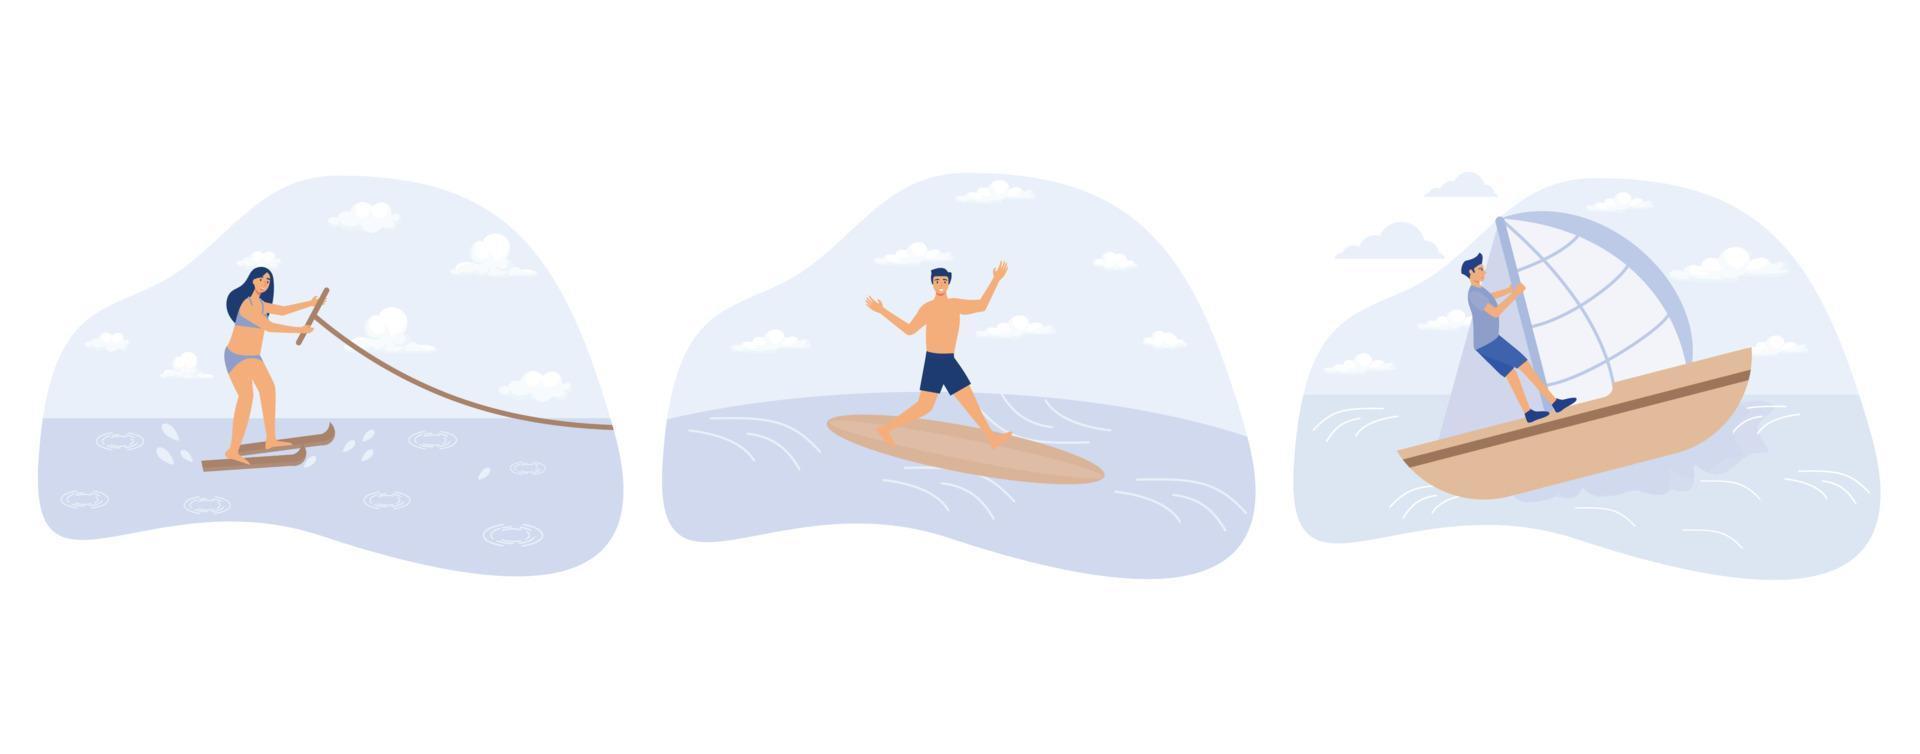 agua deporte concepto, agua esquiar, surf y navegación, activo estilo de vida, verano aventura, Oceano ola, extremo deporte, nadar traje de neopreno, yate club, conjunto plano vector moderno ilustración